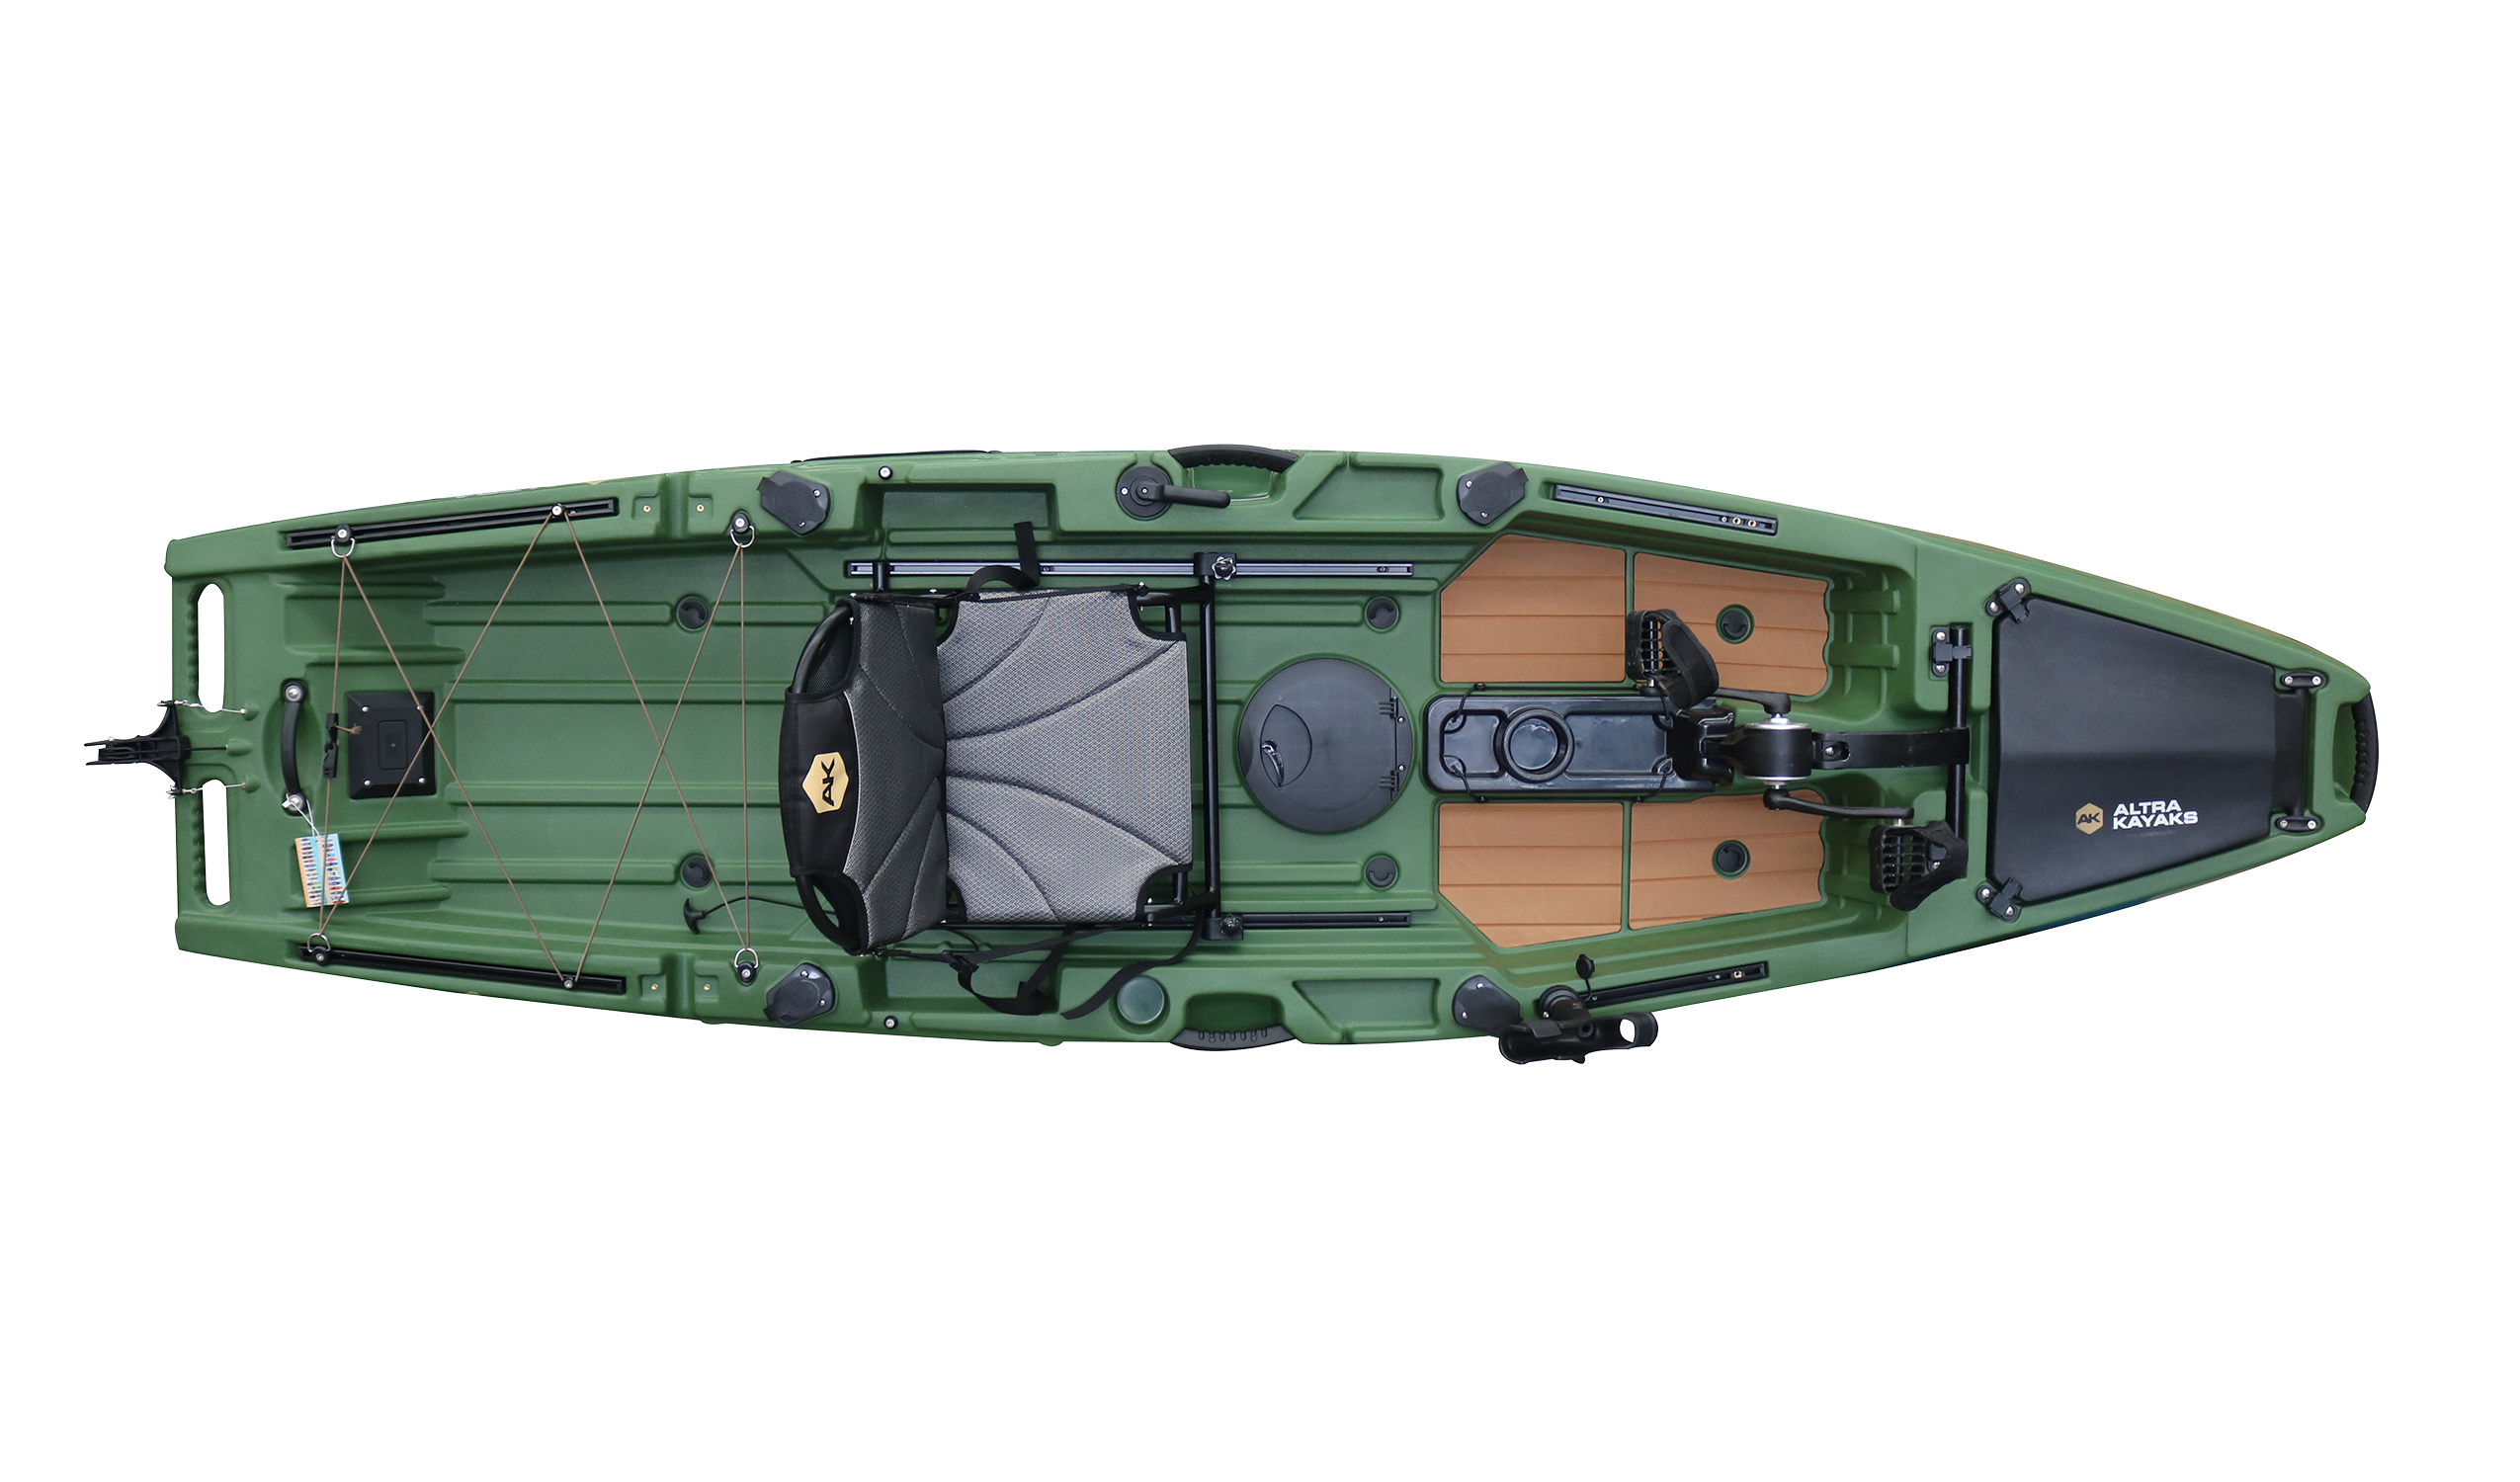 Promozione PD 320-green: kayak + sedile girevole fino al 10 marzo